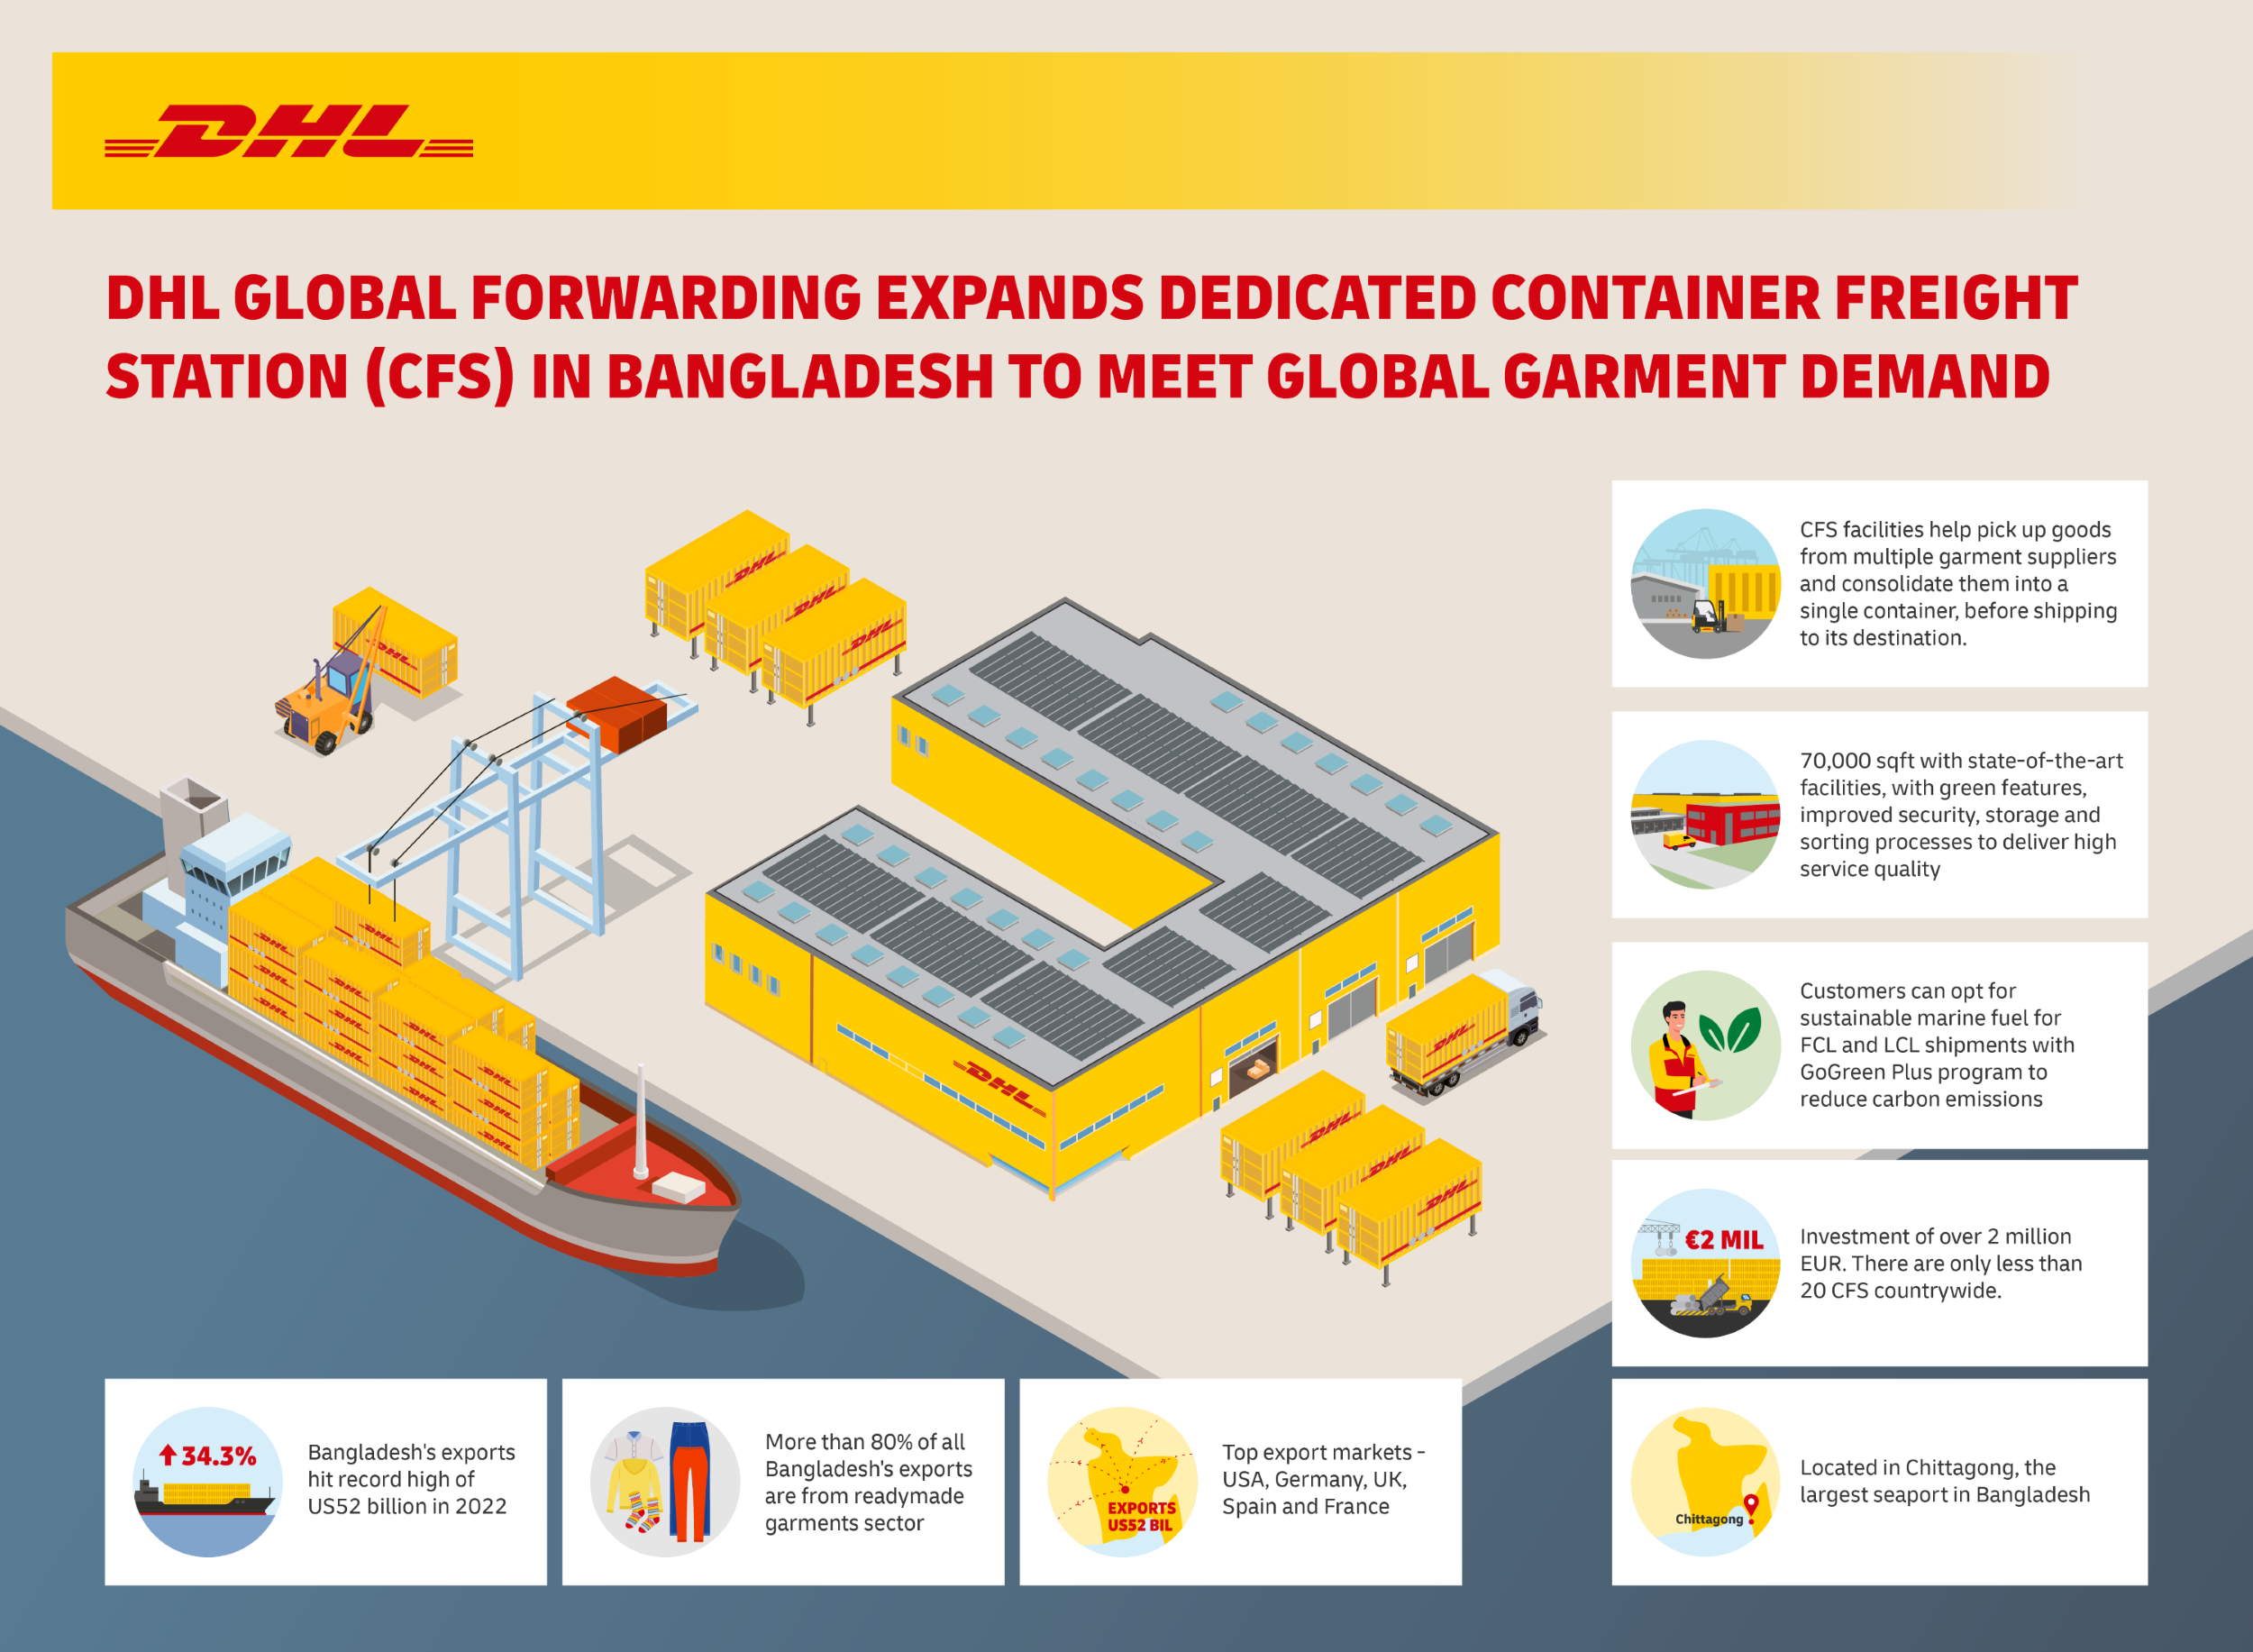 DHL Global Forwarding đầu tư hơn 2 triệu EUR để mở rộng cơ sở logistics hàng may mặc tại Bangladesh